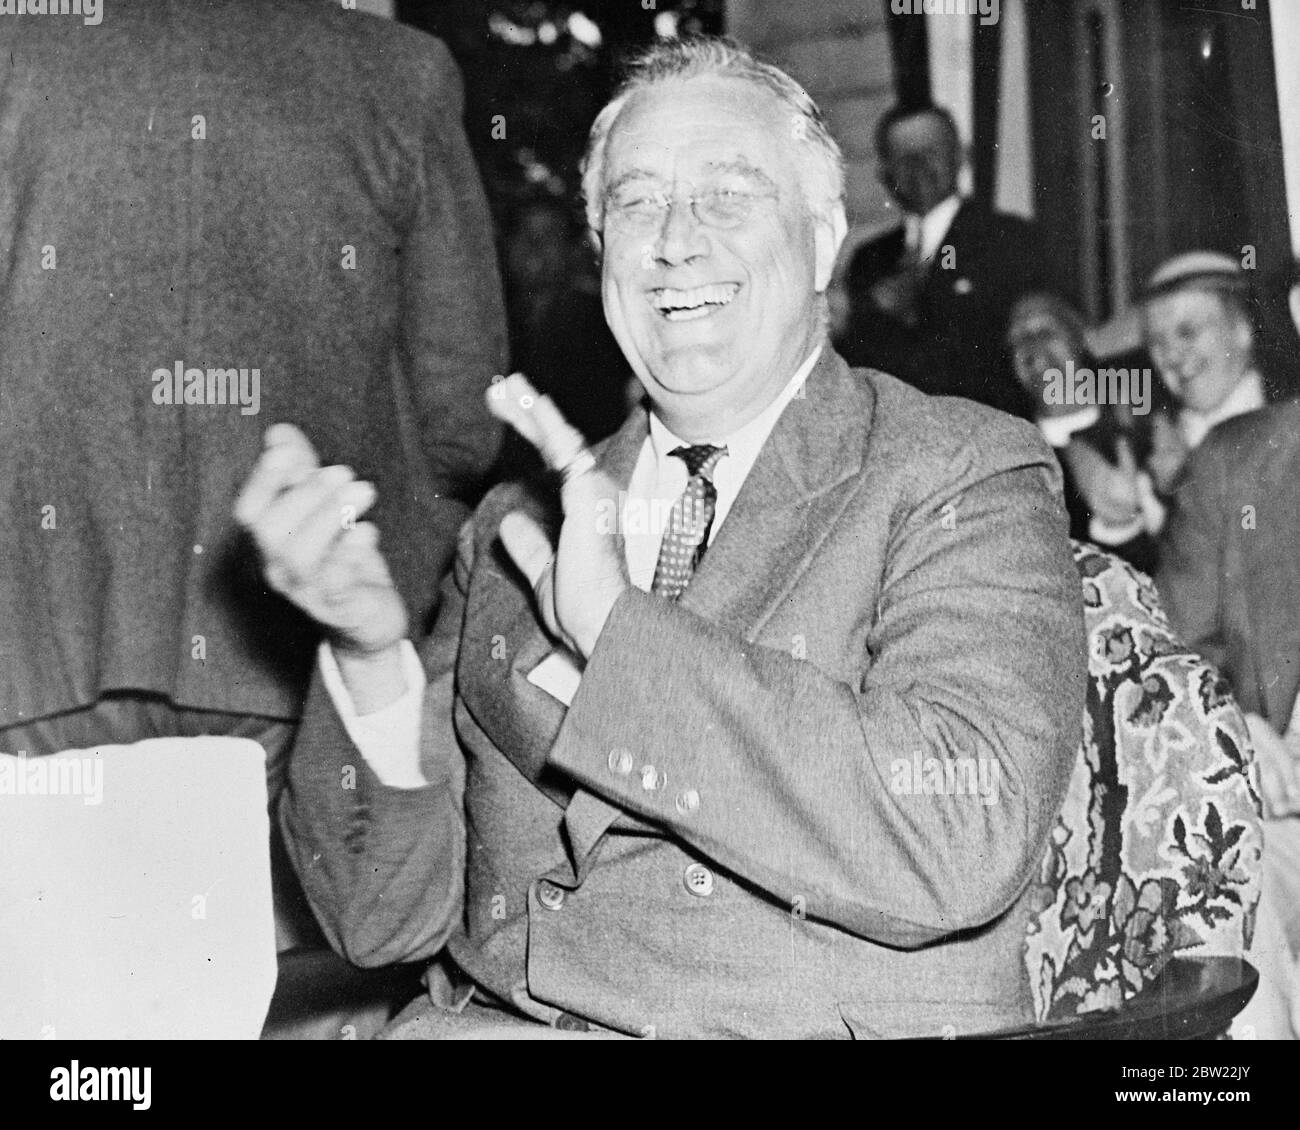 Il presidente Franklin Roosevelt, tutta la sua Corte Suprema e New Deal si preoccupano temporaneamente dimenticate, ride con grande entusiasmo e applaude una delle osservazioni attuali del suo ospite quando è stato visitato da Moses Smith, un agricoltore inquilino della sua tenuta di Hyde Park, New York, con Bernard Baruch, il finanziere. 22 settembre 1937 Foto Stock